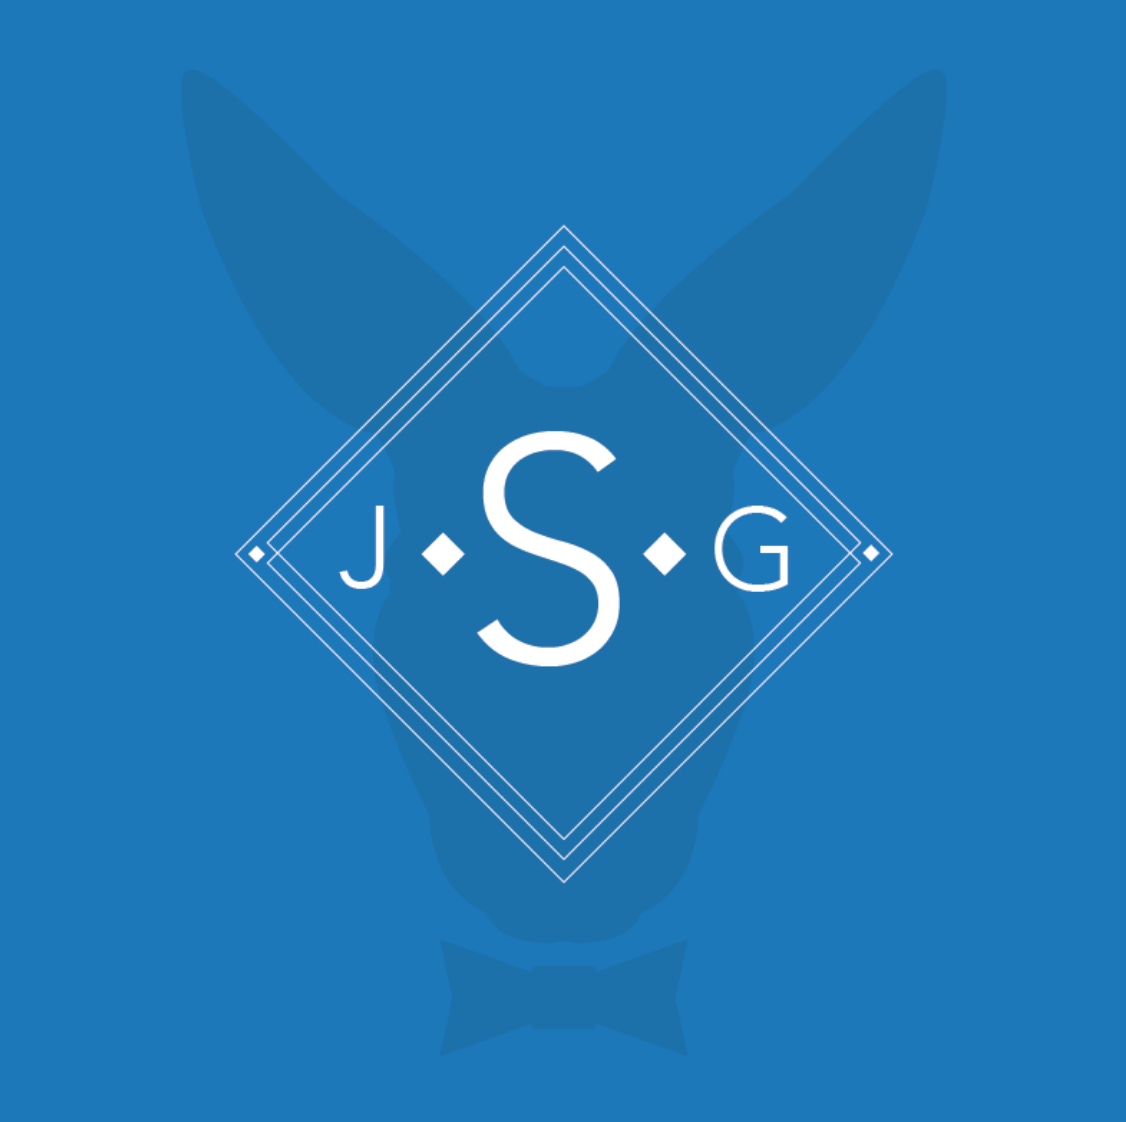 Jump Suit Group Logo